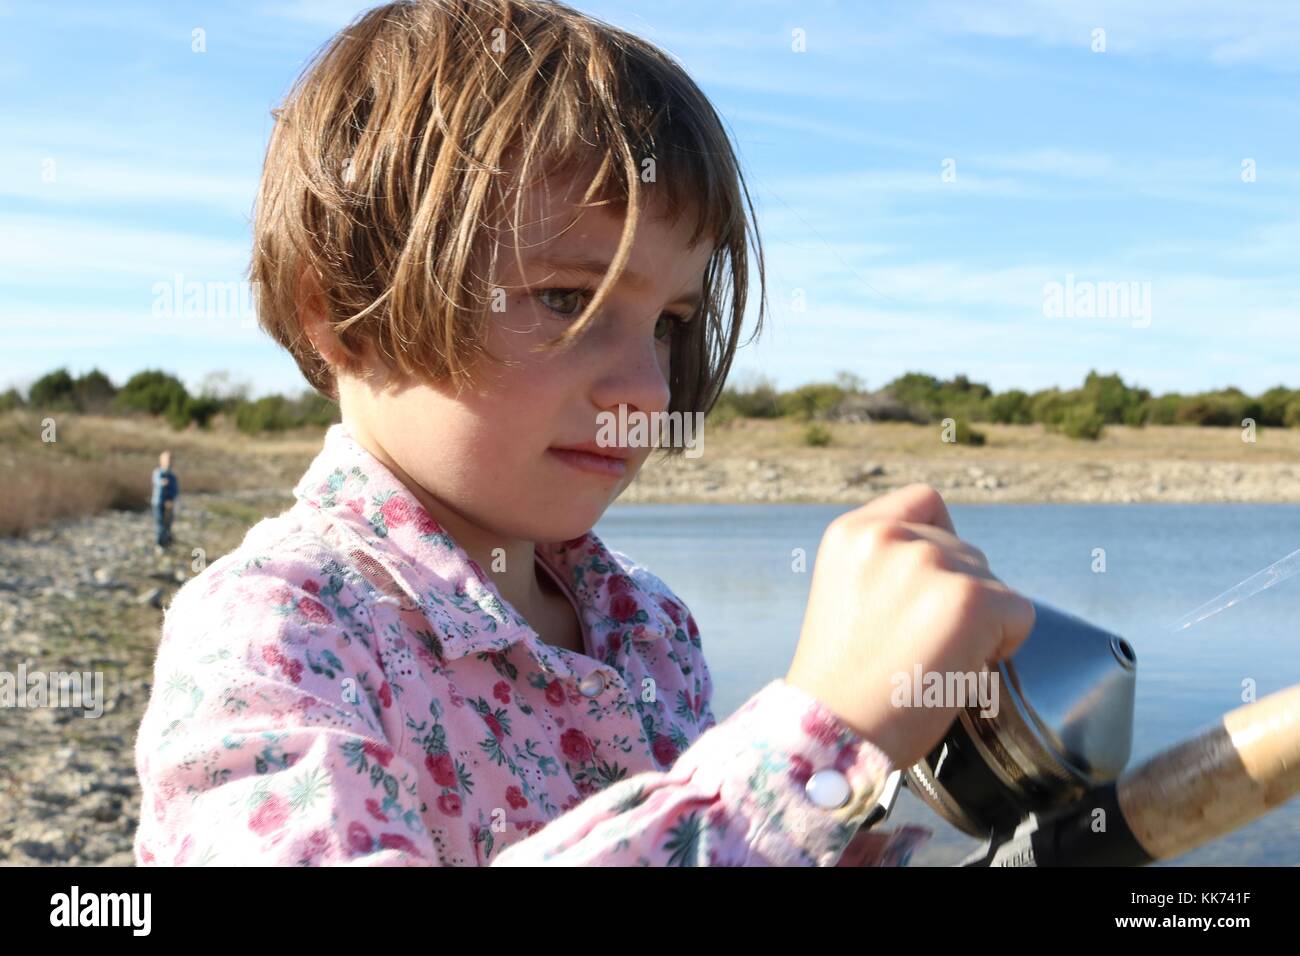 Primo piano della bambina la bobinatura in un pesce ha catturato Foto Stock